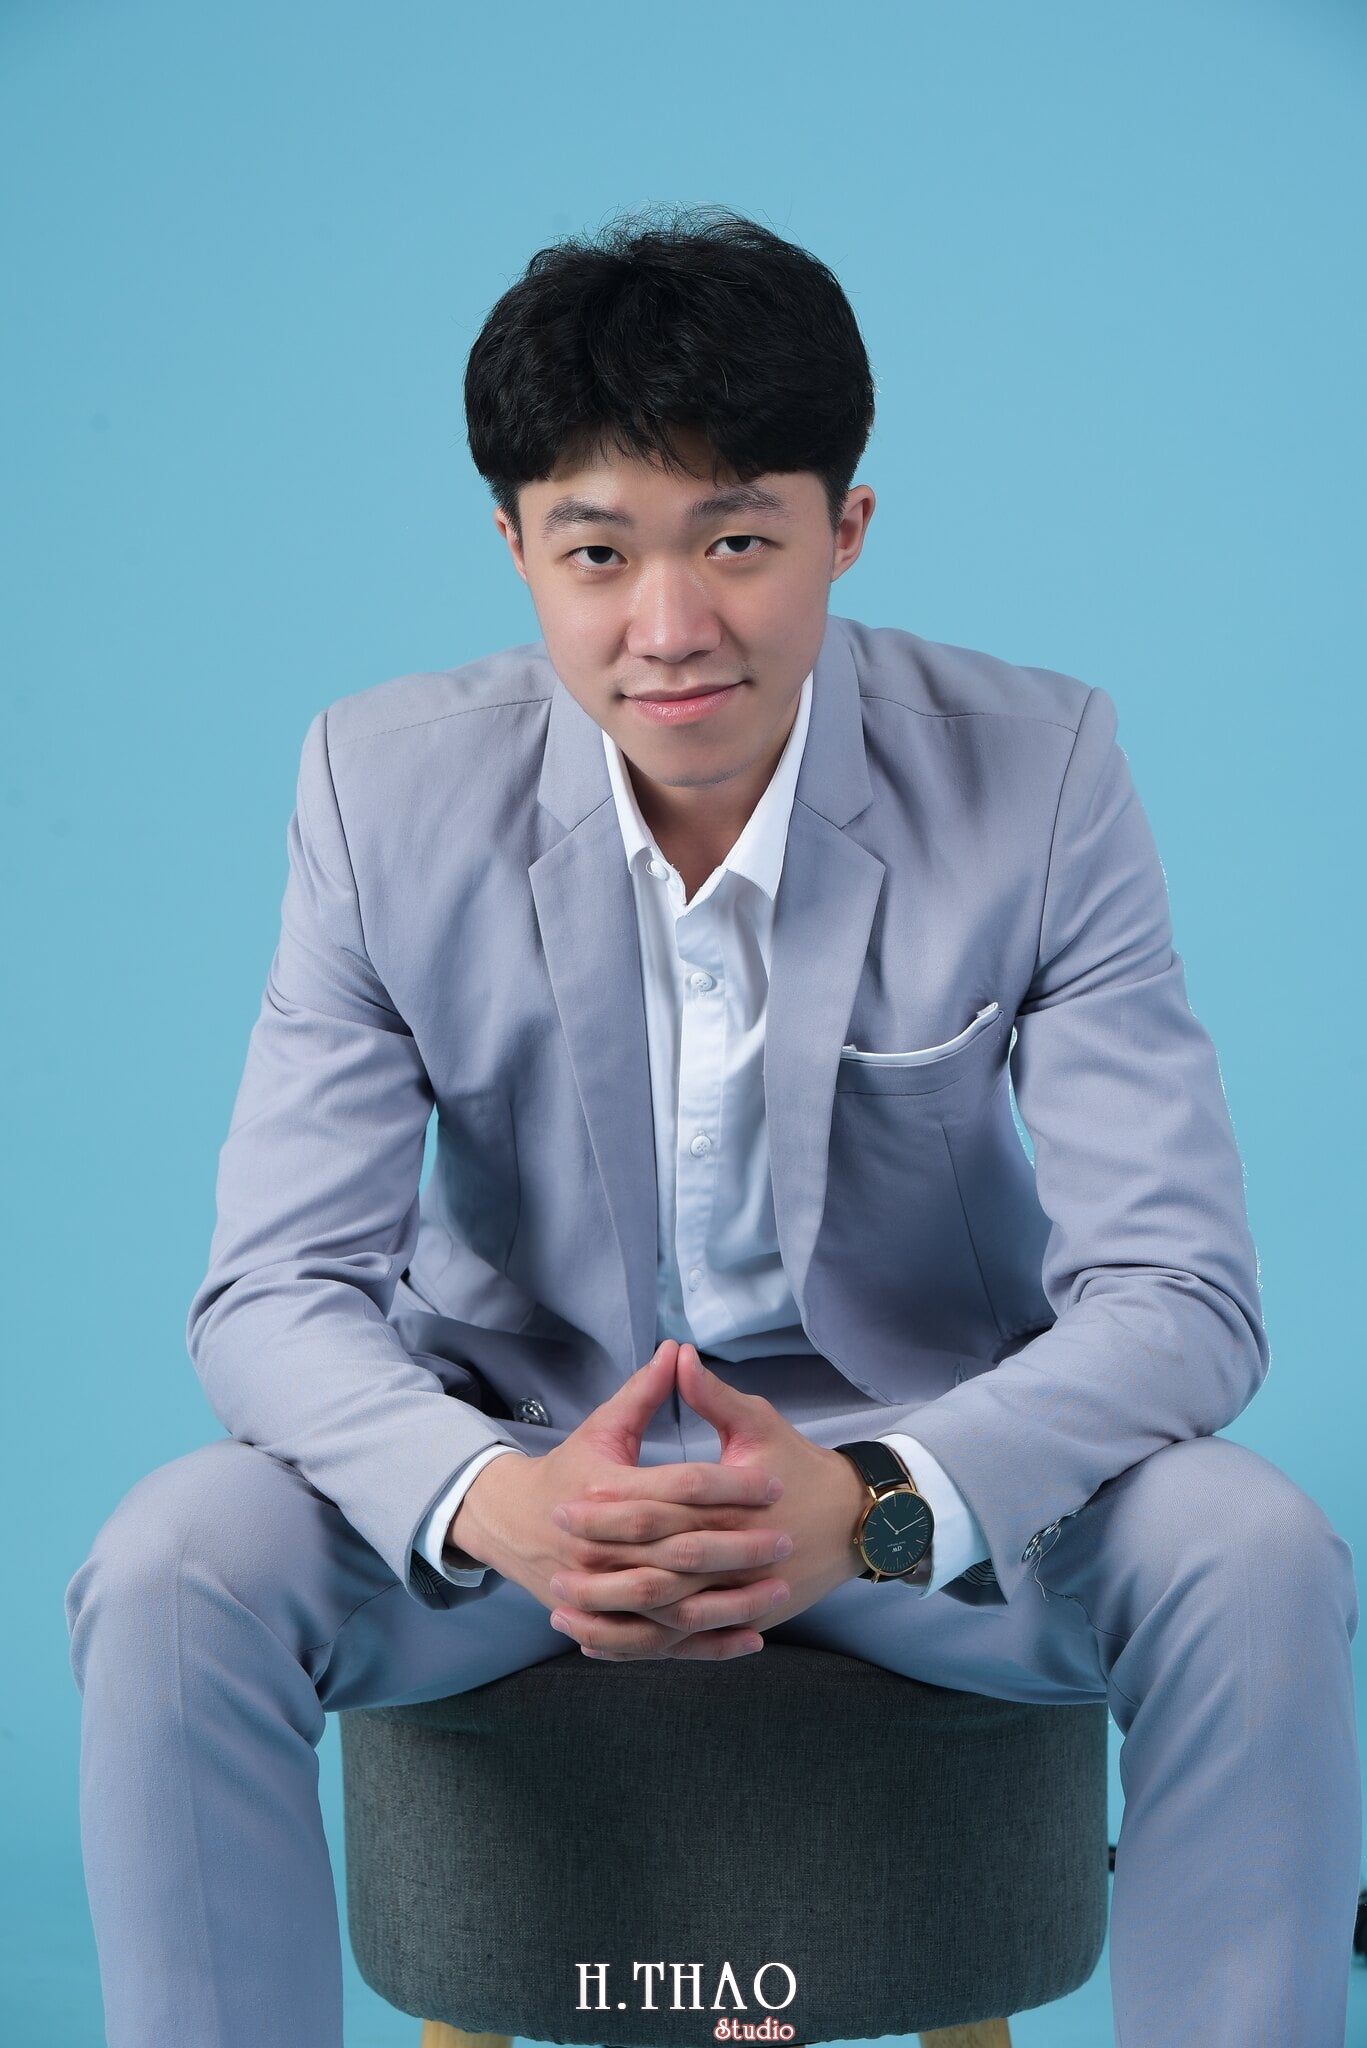 Thanh dat xanh 10 - 49 cách tạo dáng chụp ảnh profile đẹp, chuyên nghiệp nhất- HThao Studio